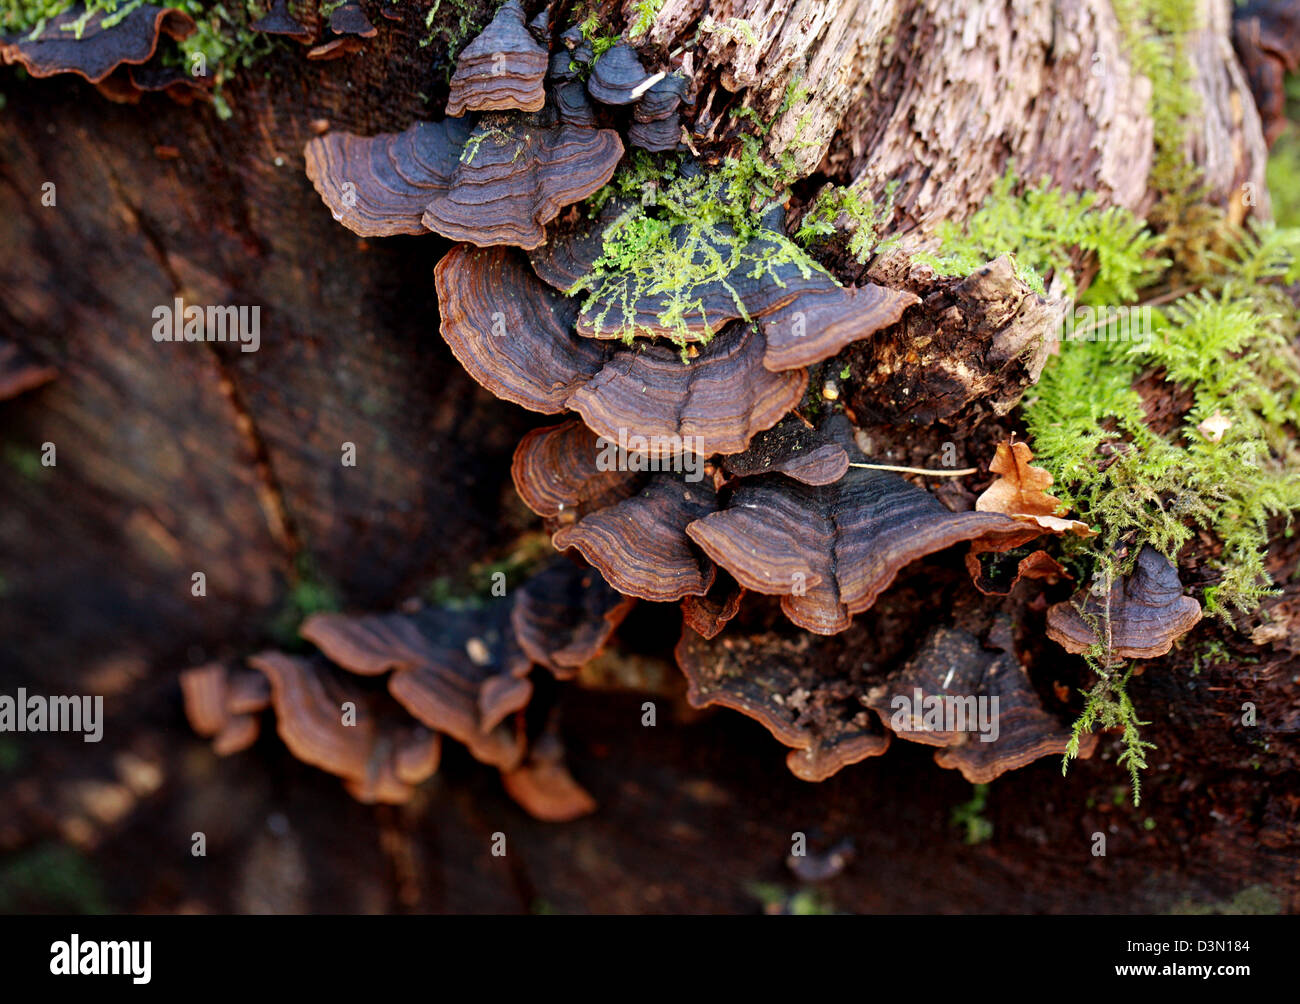 Oak Curtain Crust, Hymenochaete rubiginosa, Hymenochaetaceae. Bracket Fungus Growing on an Old Dead Oak Tree. Stock Photo